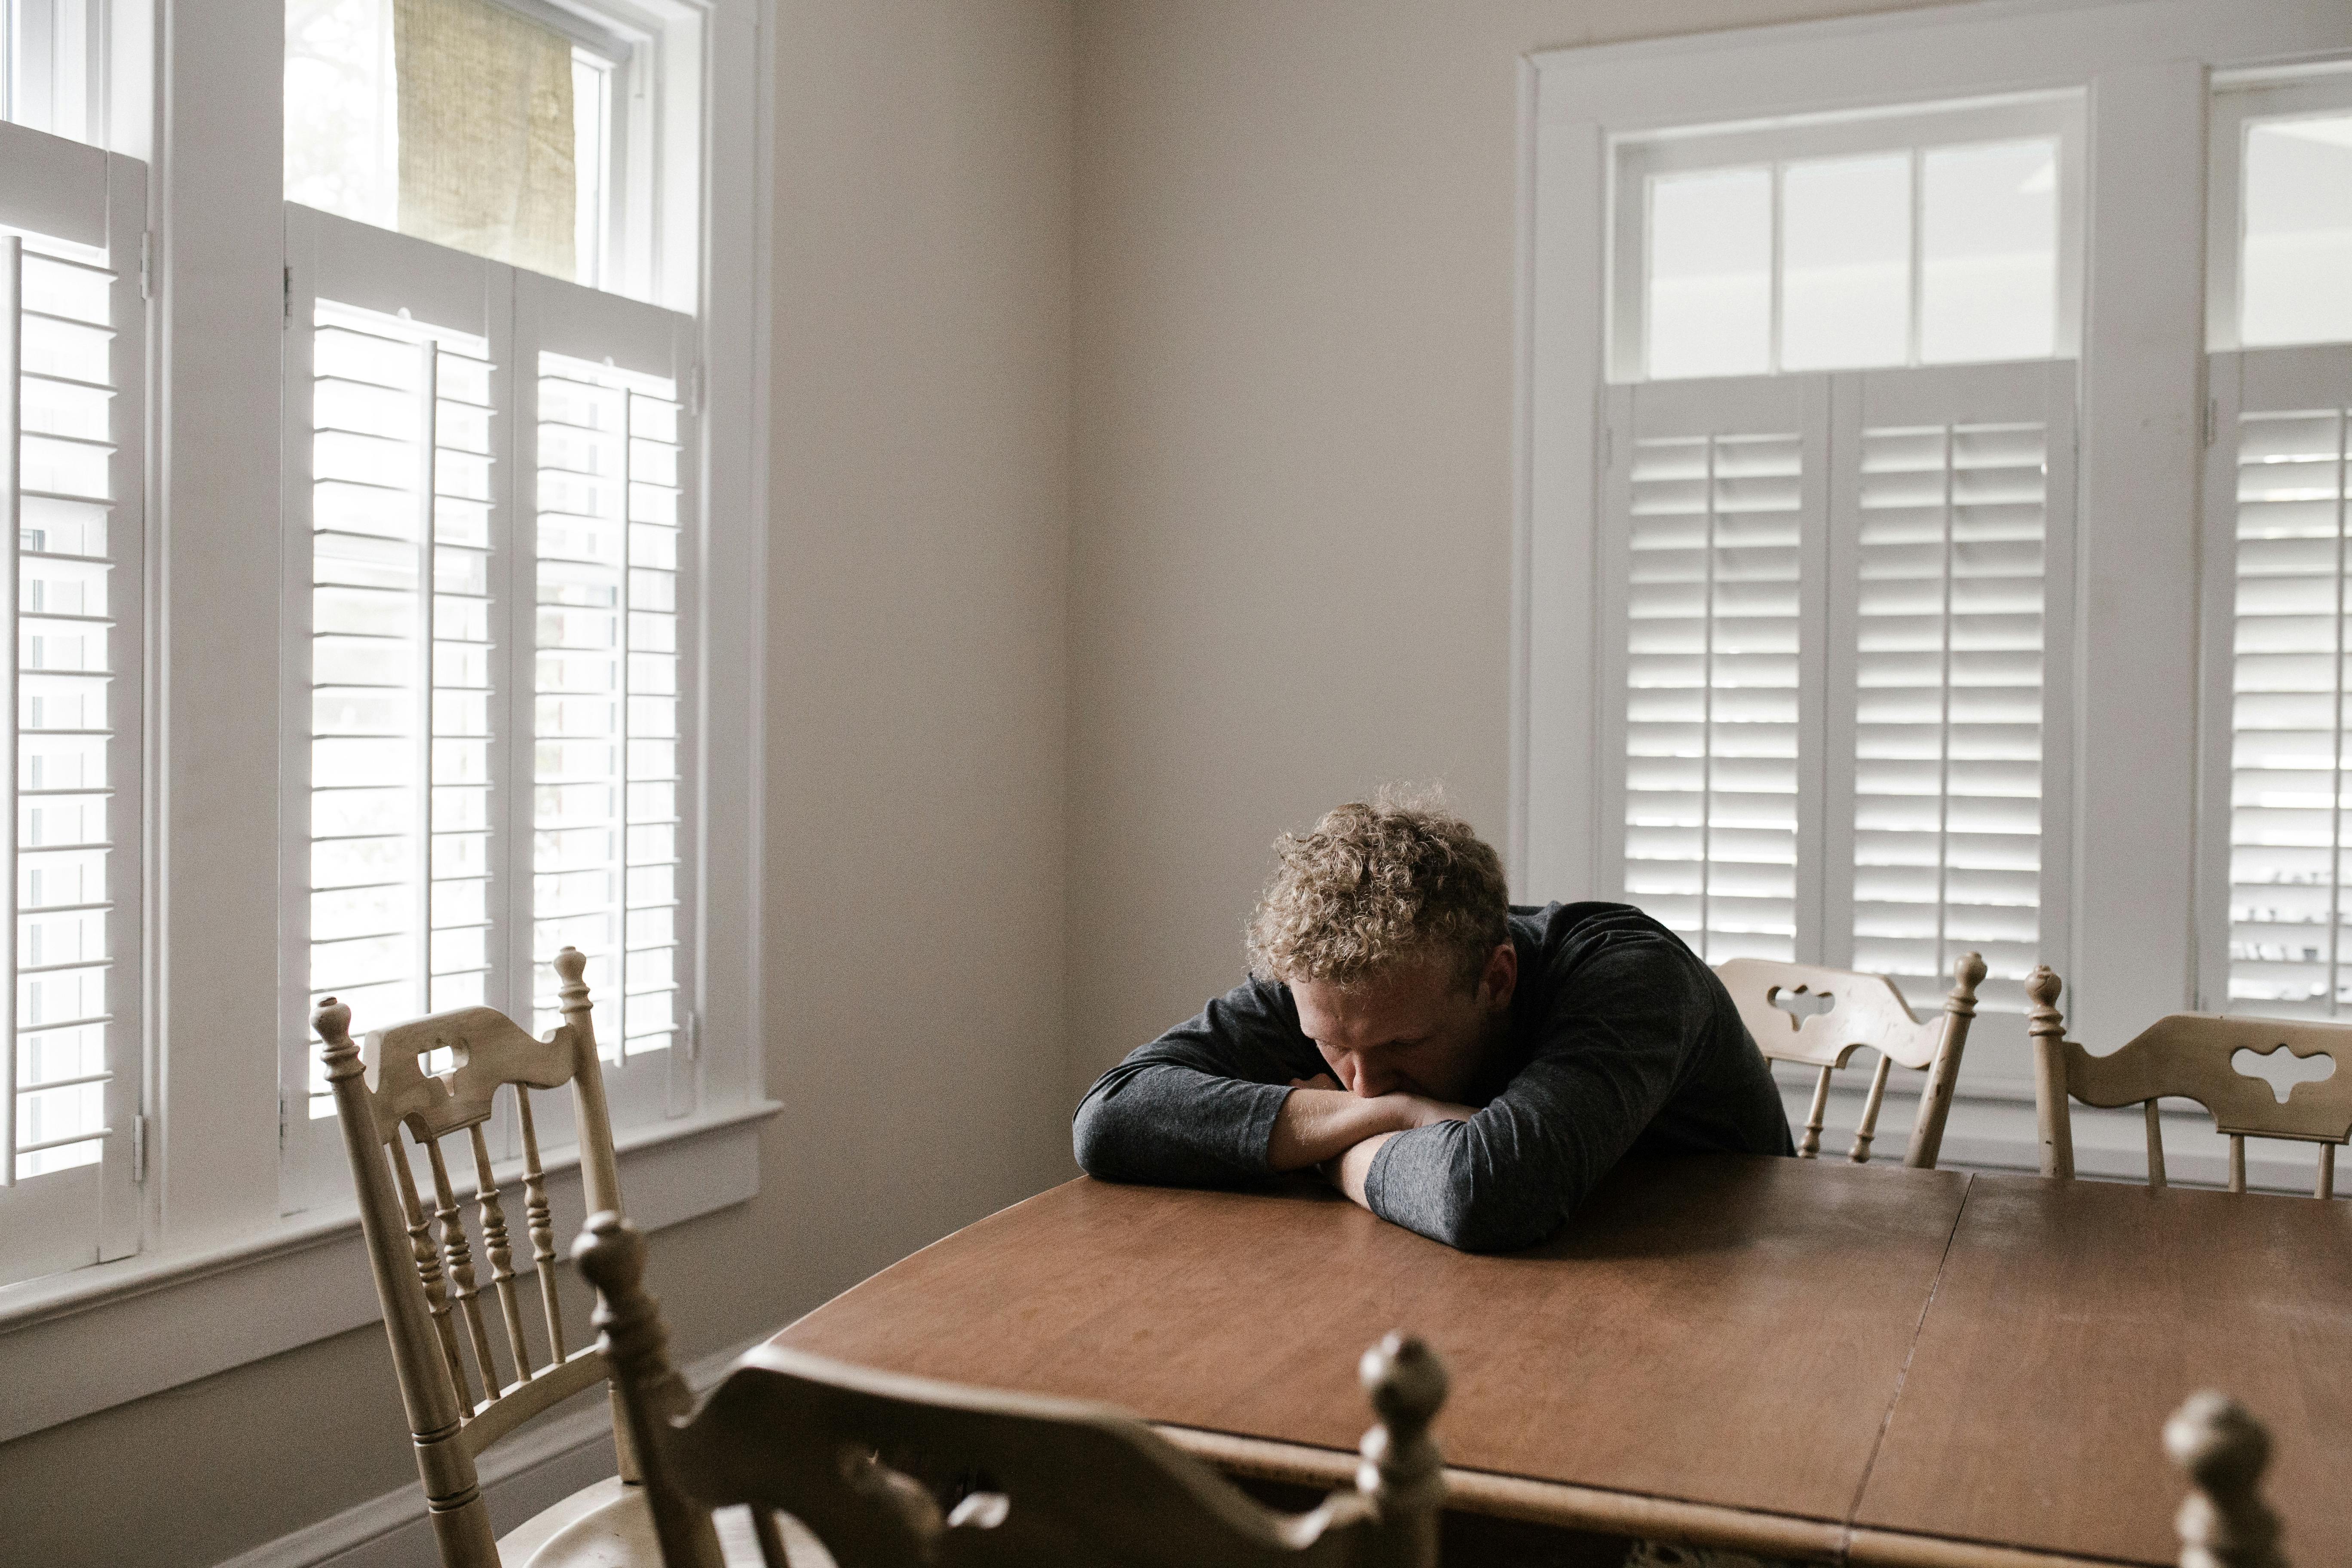 Un homme seul allongé sur une table | Source : Pexels